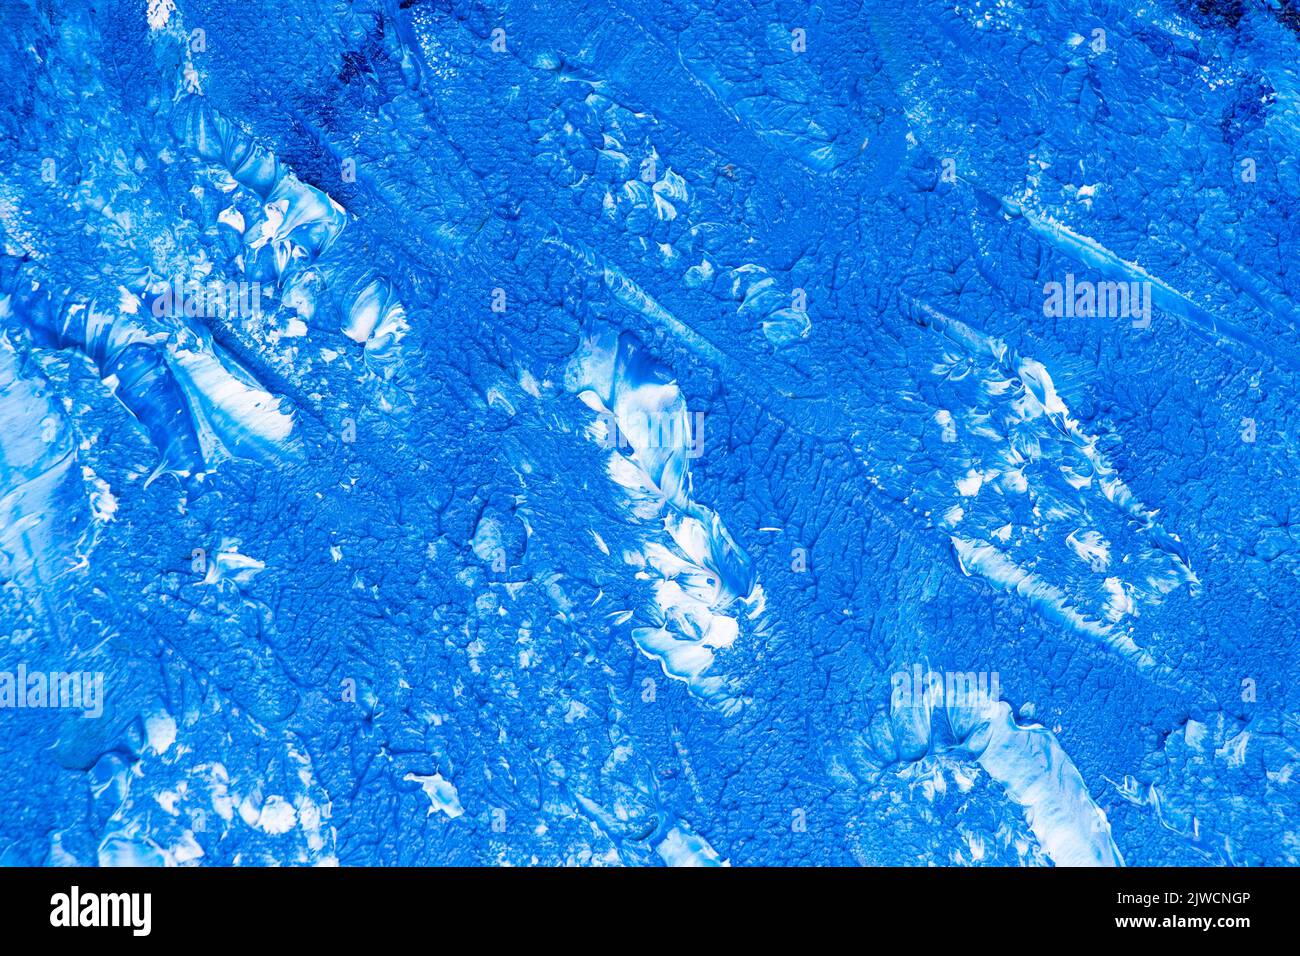 Une texture de peinture à l'huile bleue et blanche - arrière-plan marin Banque D'Images